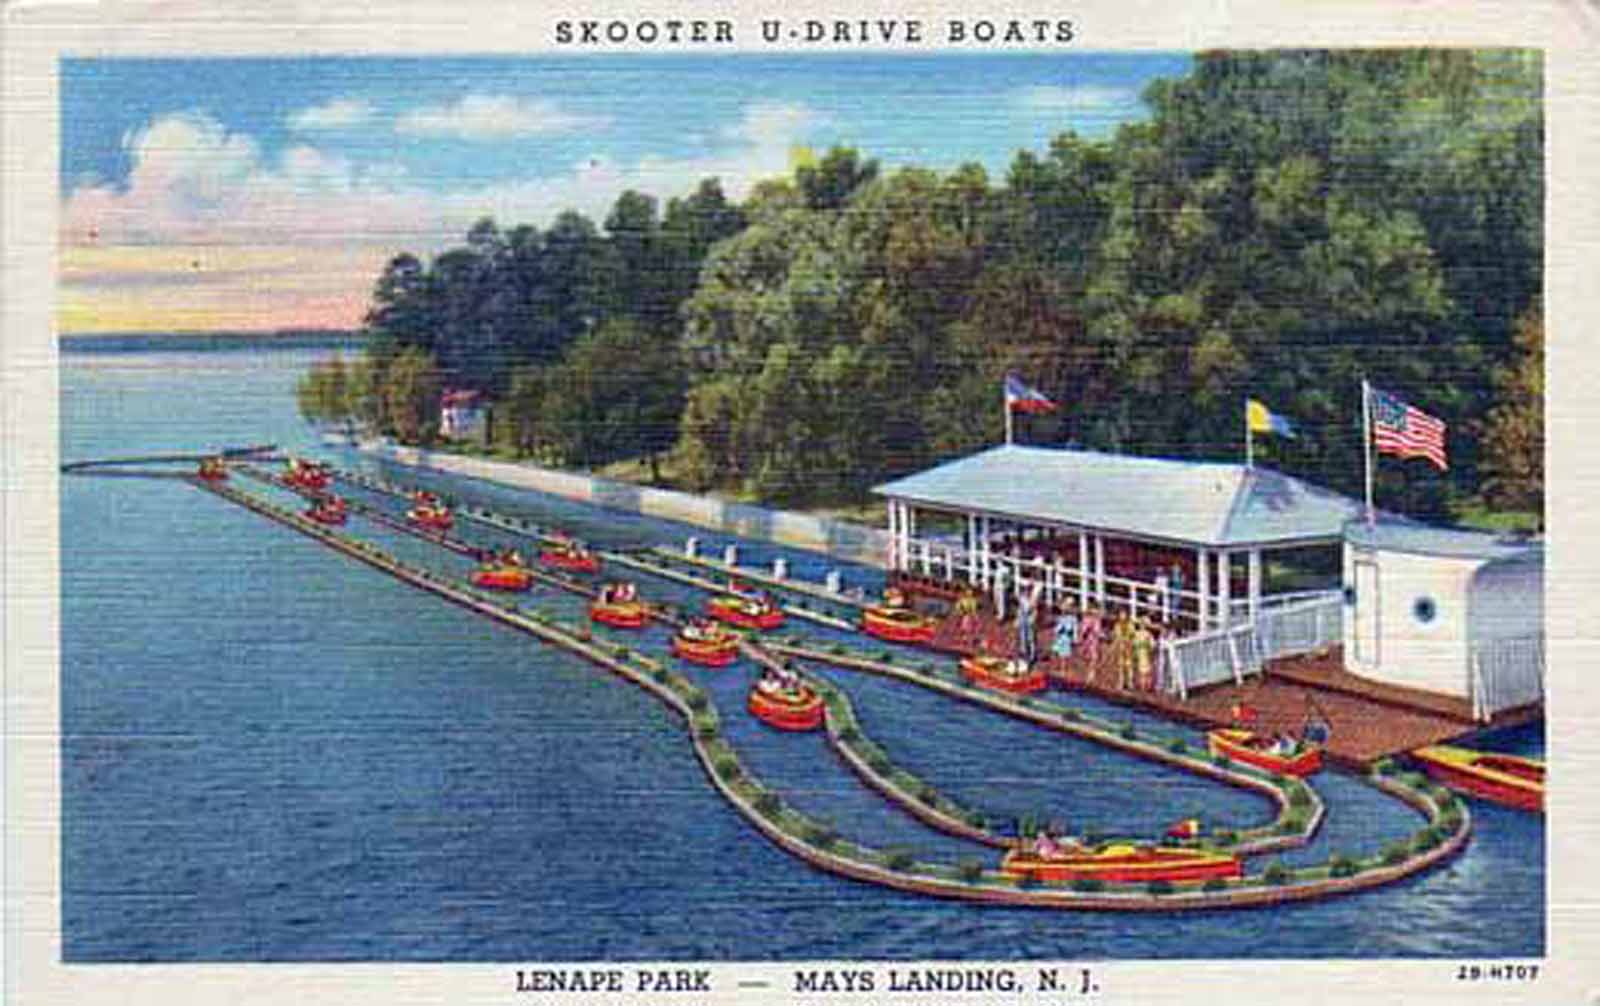 Mays Landing - Scooter Boats Ride at Lake Lenape Park